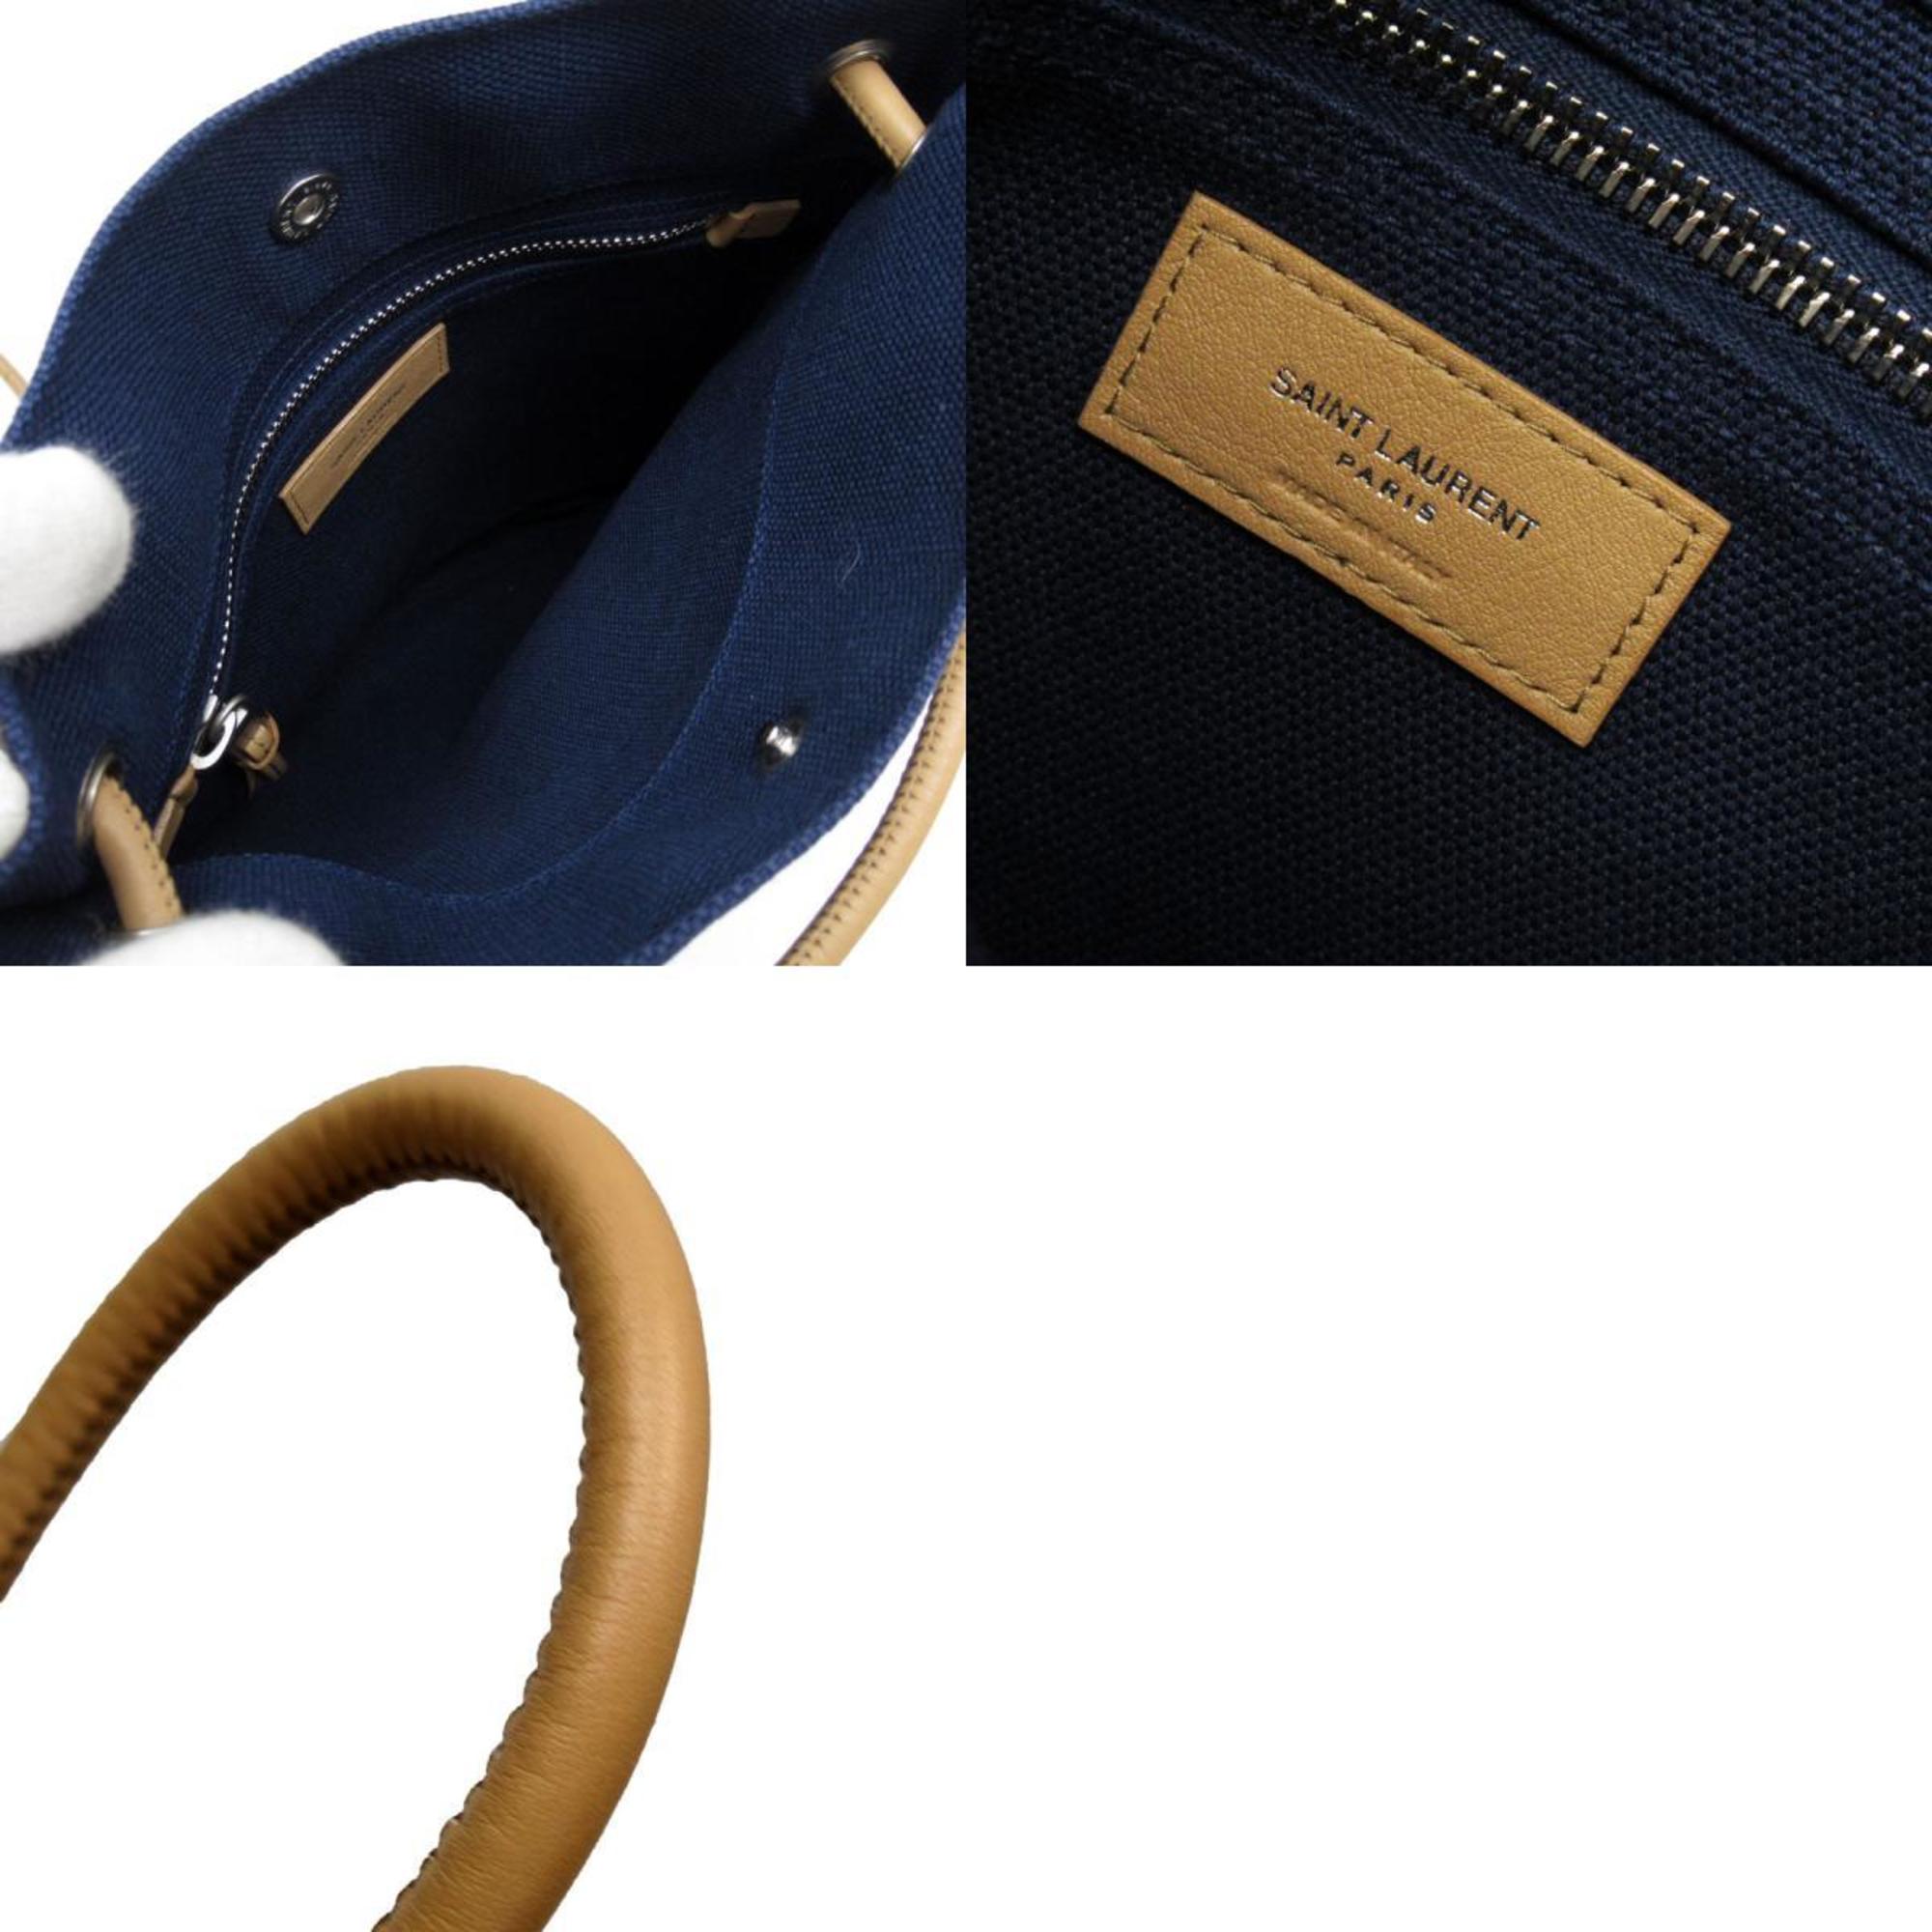 Saint Laurent shoulder bag, cotton canvas/leather, navy/beige, unisex, w0146g